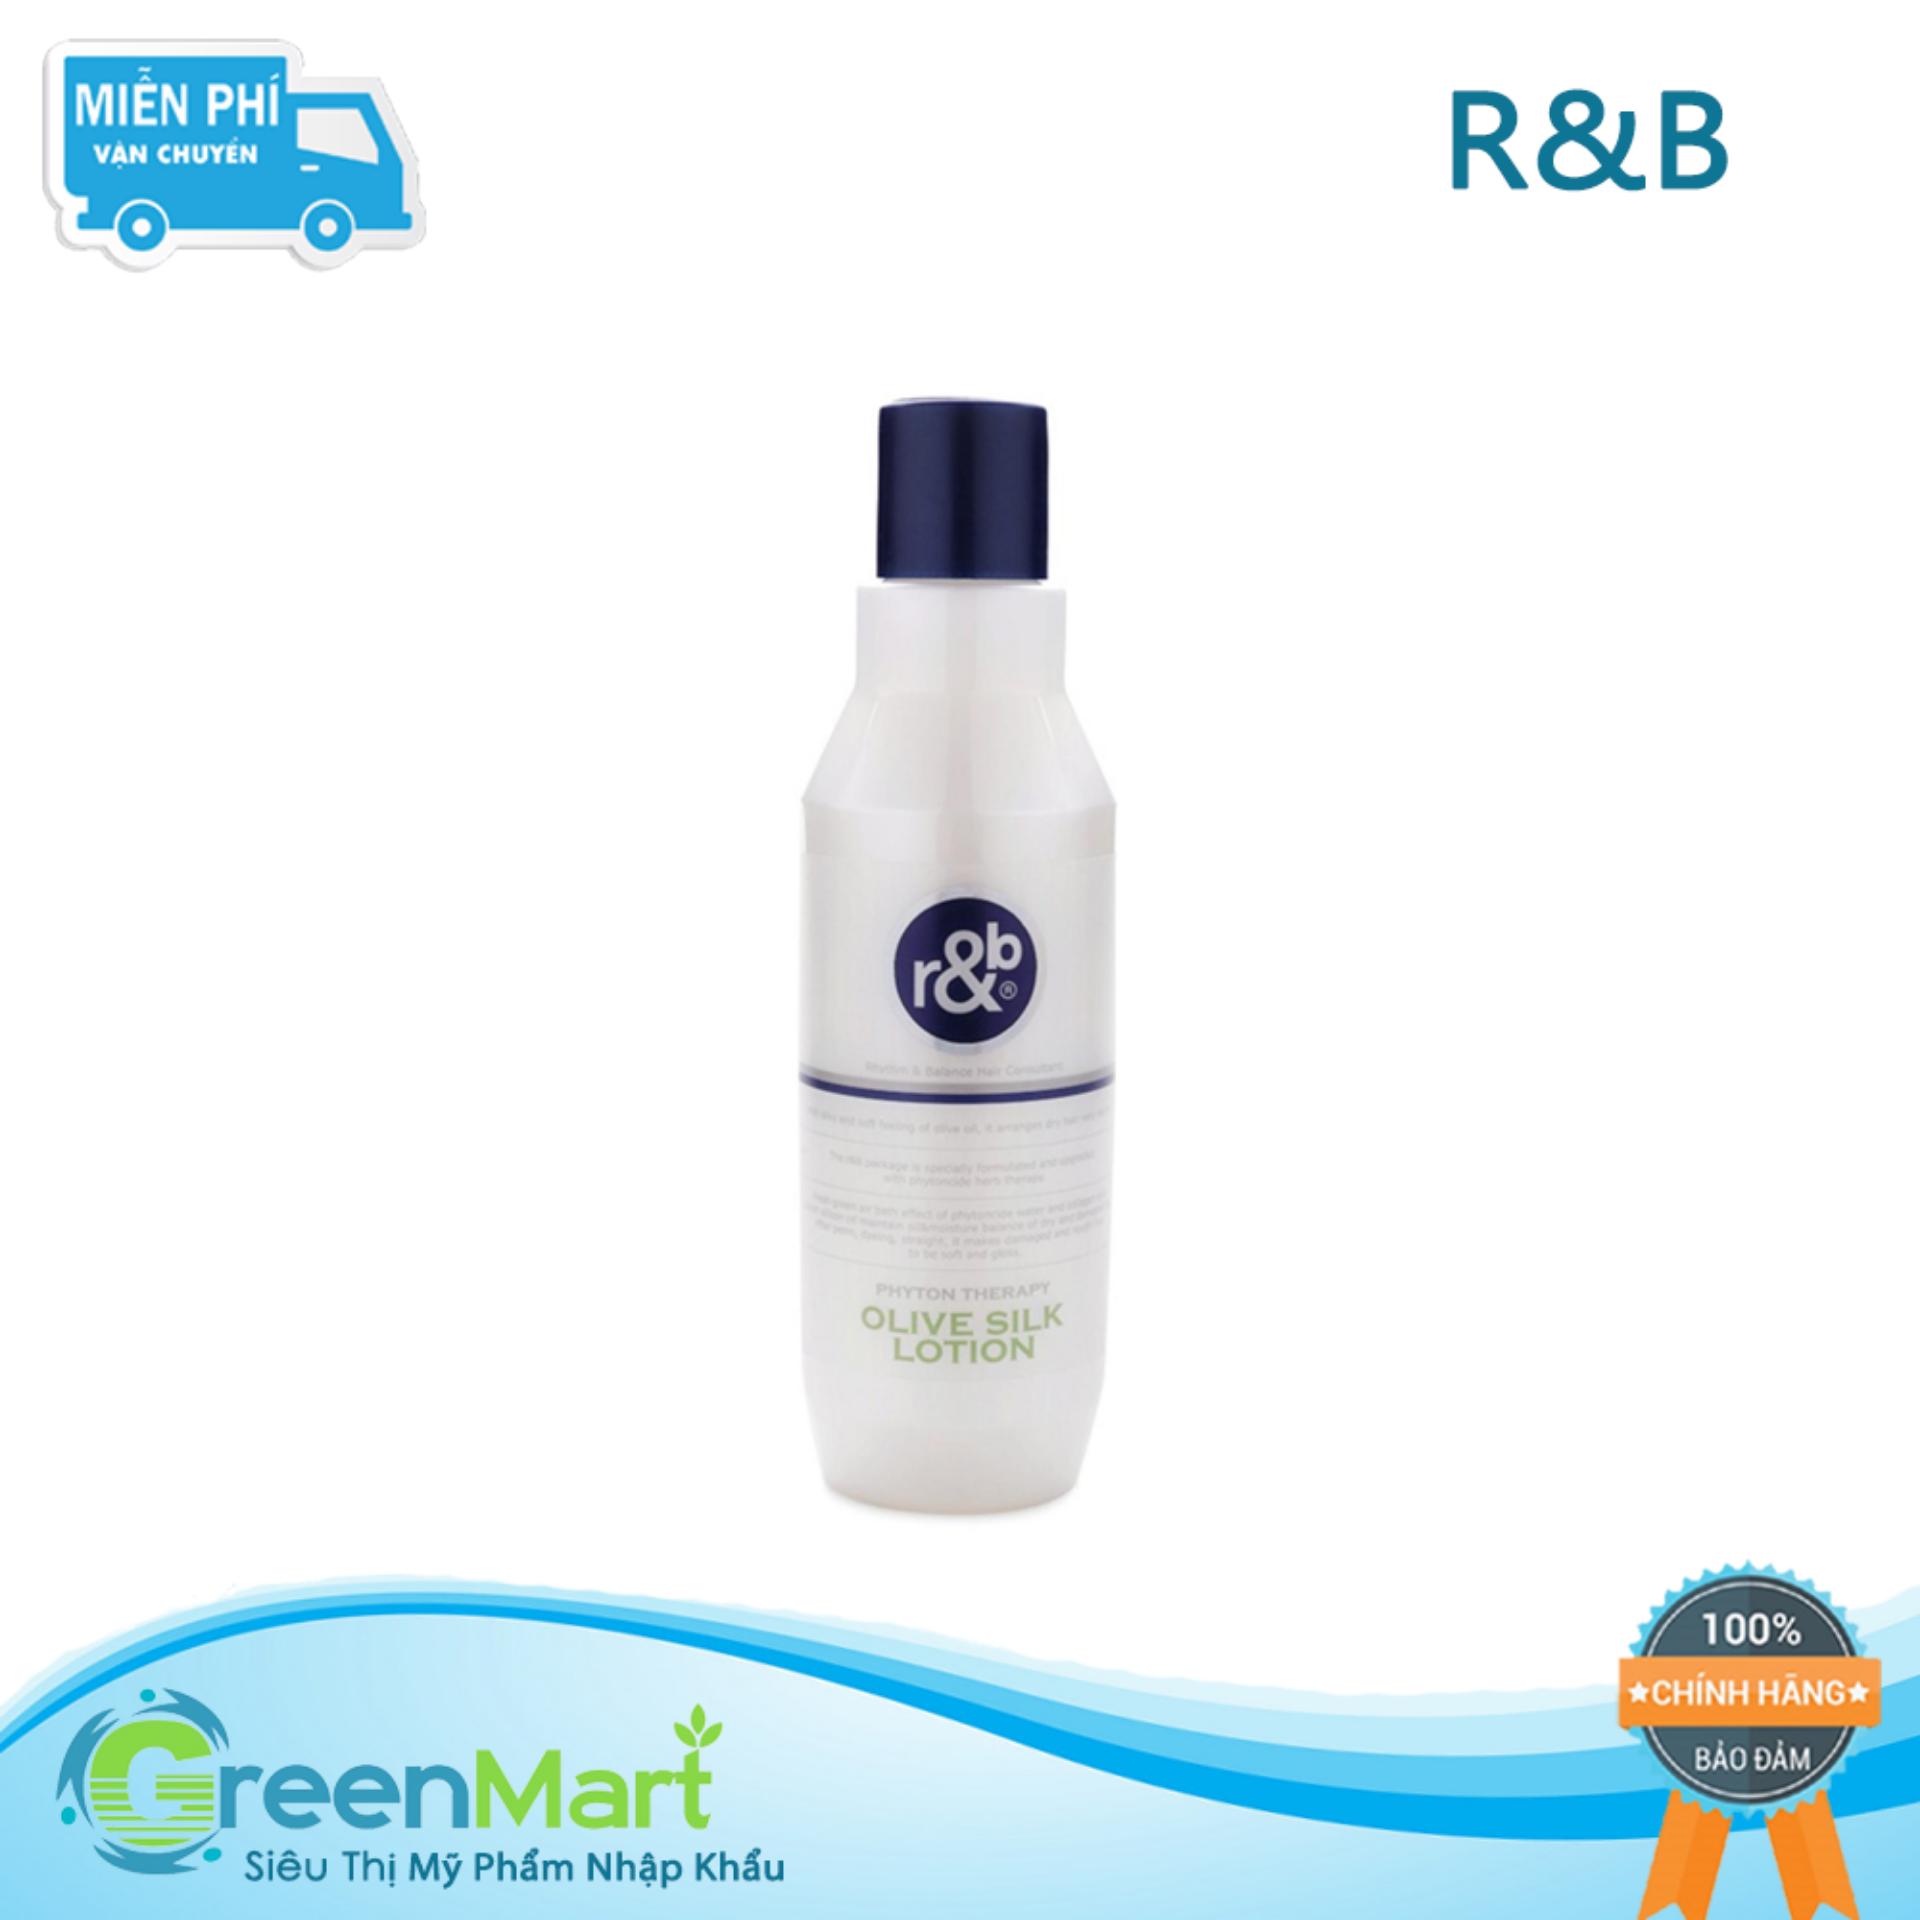 [HCM]Kem dinh dưỡng bóng tóc dưỡng ẩm phục hồi tóc khô và giữ nếp tóc uốn R&B Olive Silk Lotion Hàn Quốc 250ml